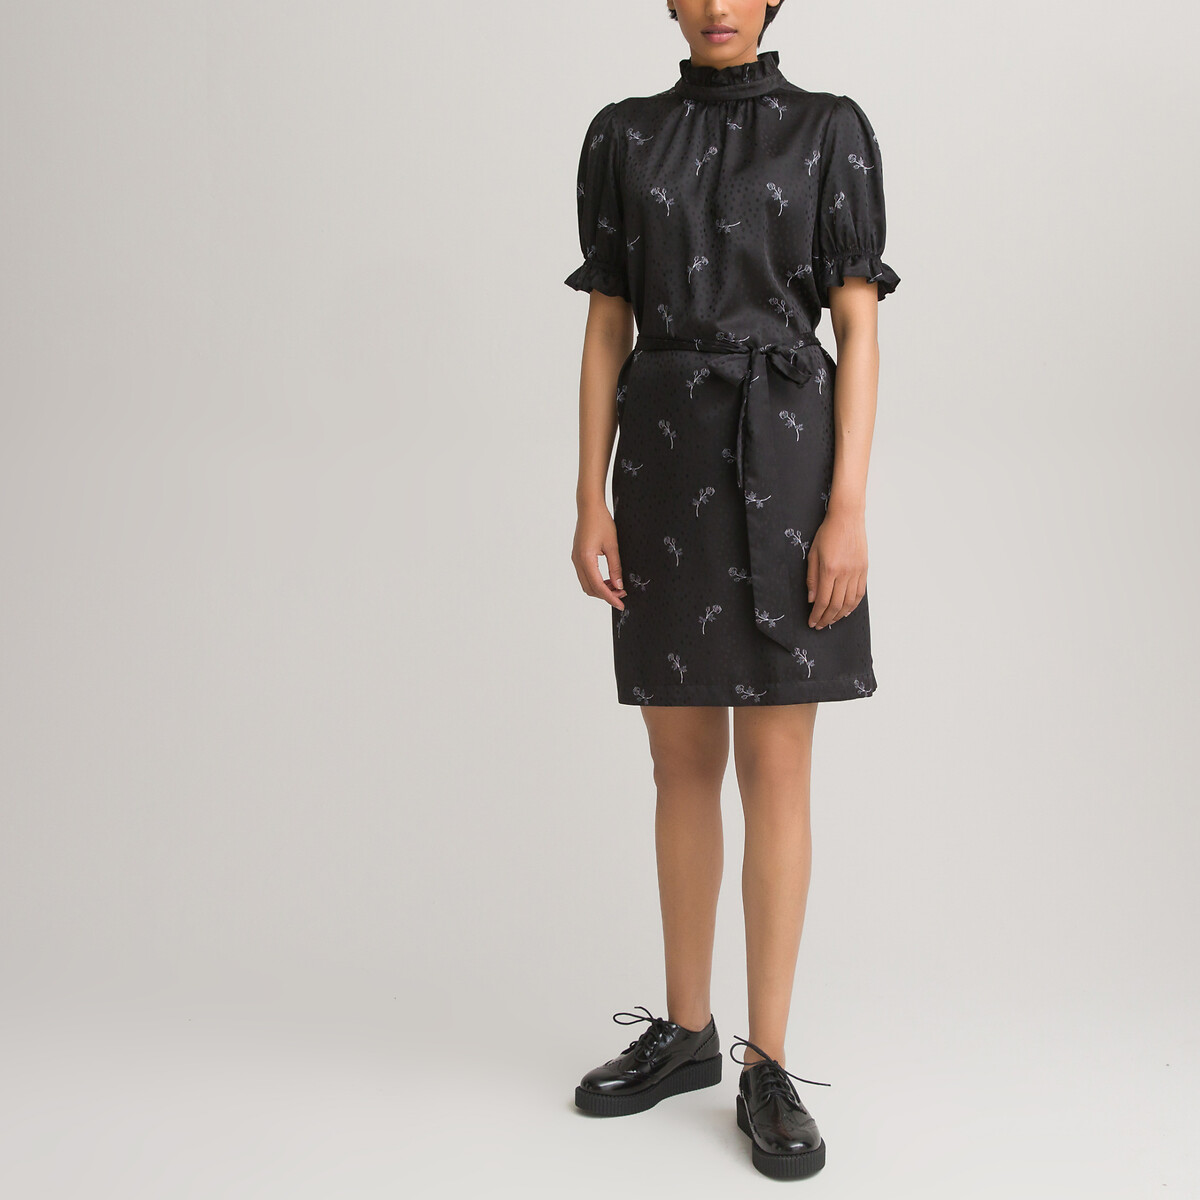 Платье LaRedoute С воротником-стойкой короткие рукава из сатина с принтом 40 черный, размер 40 - фото 2